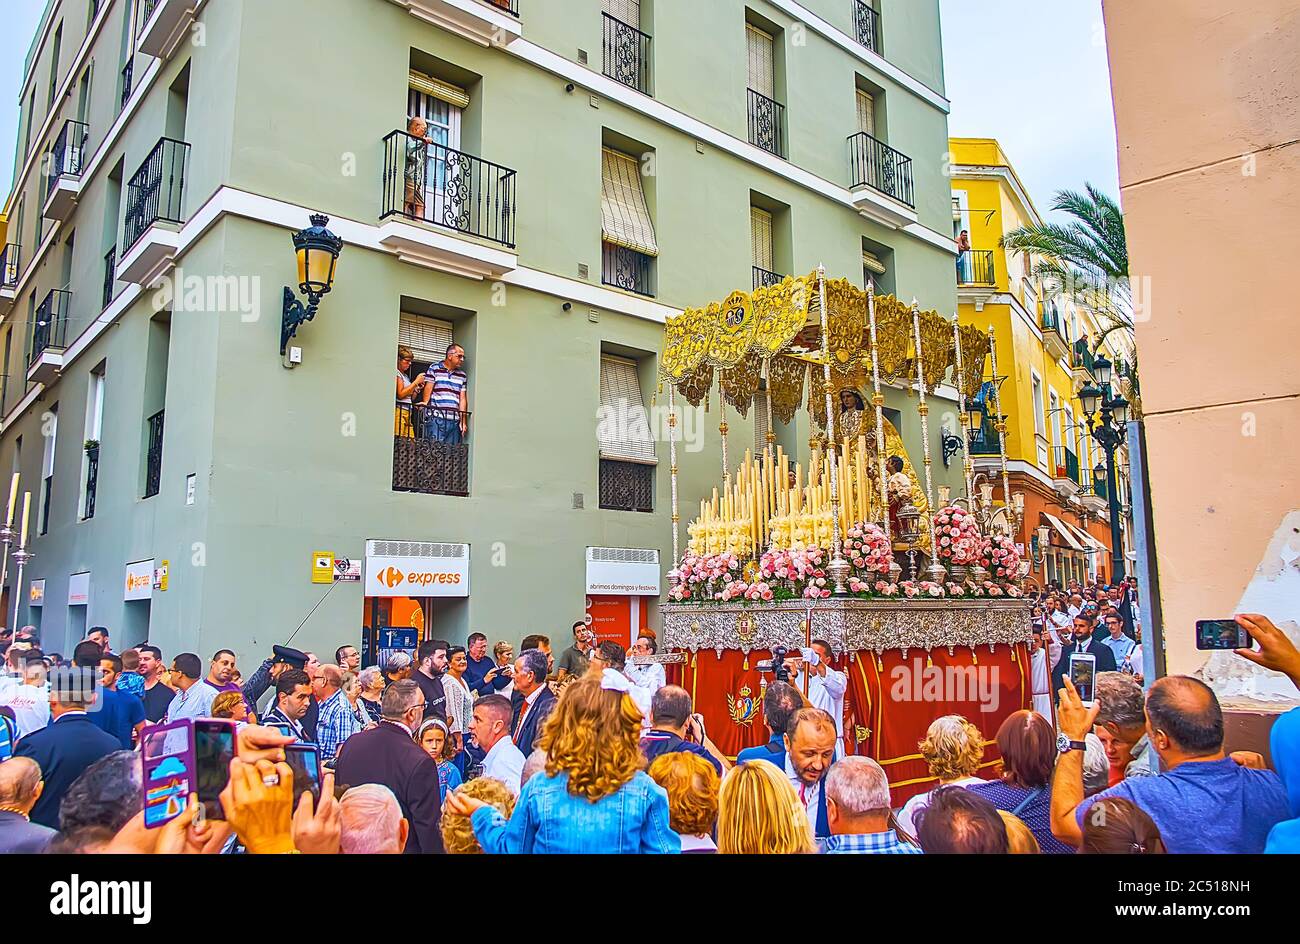 CÁDIZ, ESPAÑA - 22 DE SEPTIEMBRE de 2019: Procesión religiosa de Mercedes Fiesta (Festival de nuestra Señora de la Misericordia) con estatua de nuestra Señora en palanqu canoped Foto de stock